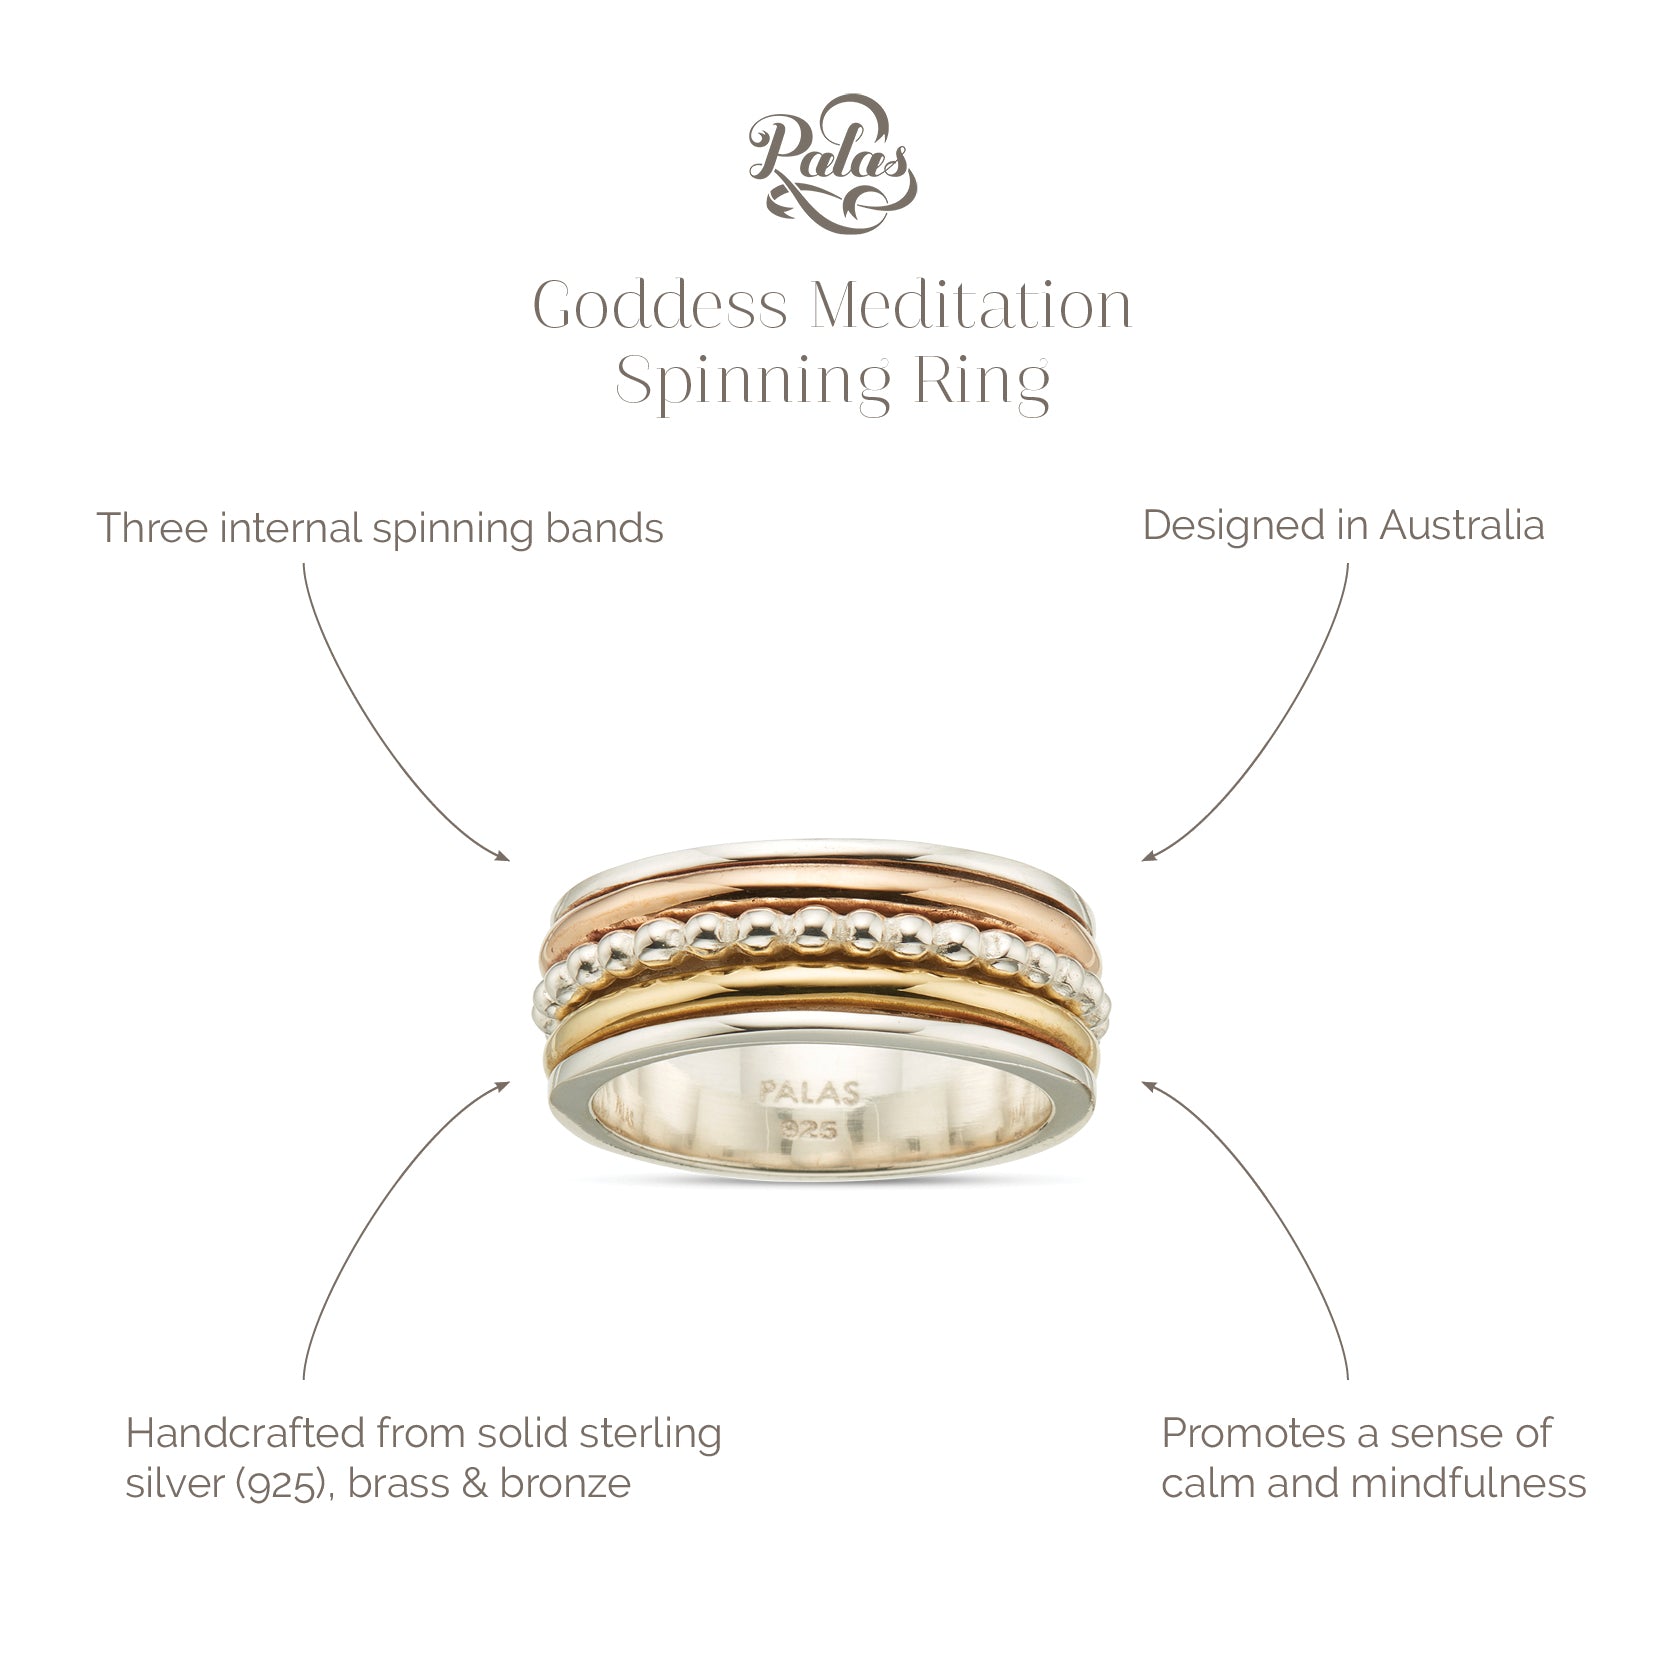 Goddess meditation spinning ring